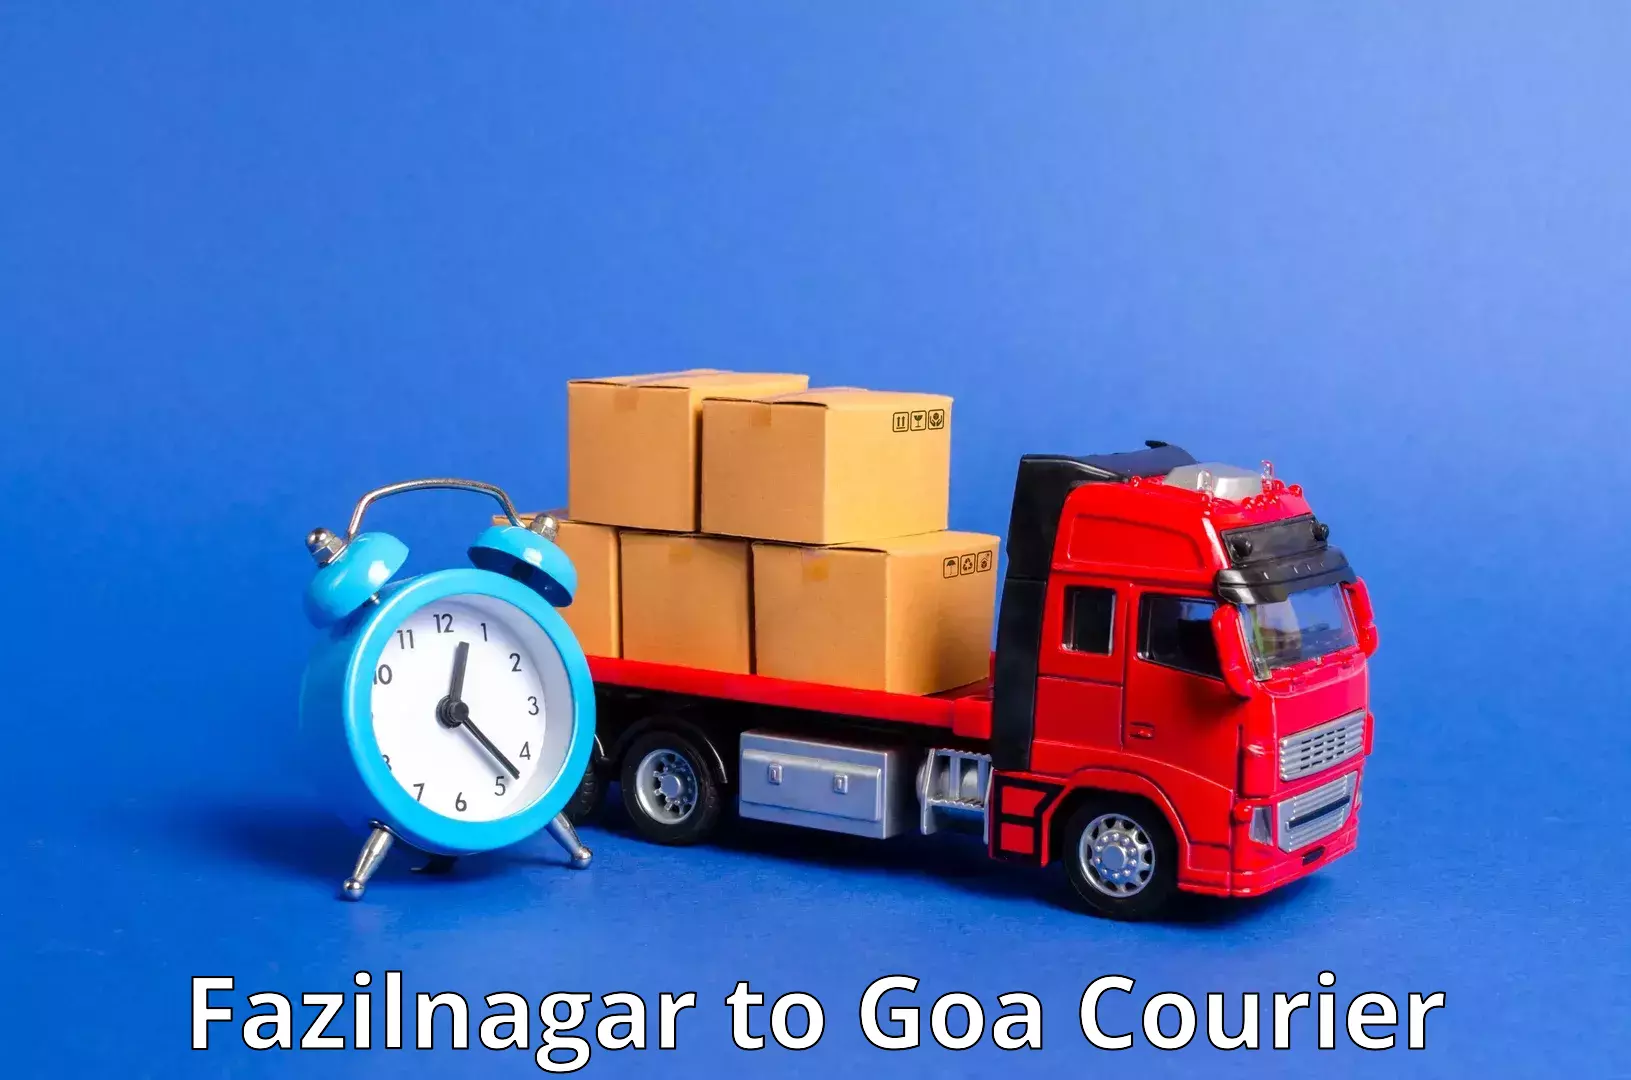 Reliable parcel services Fazilnagar to Bardez